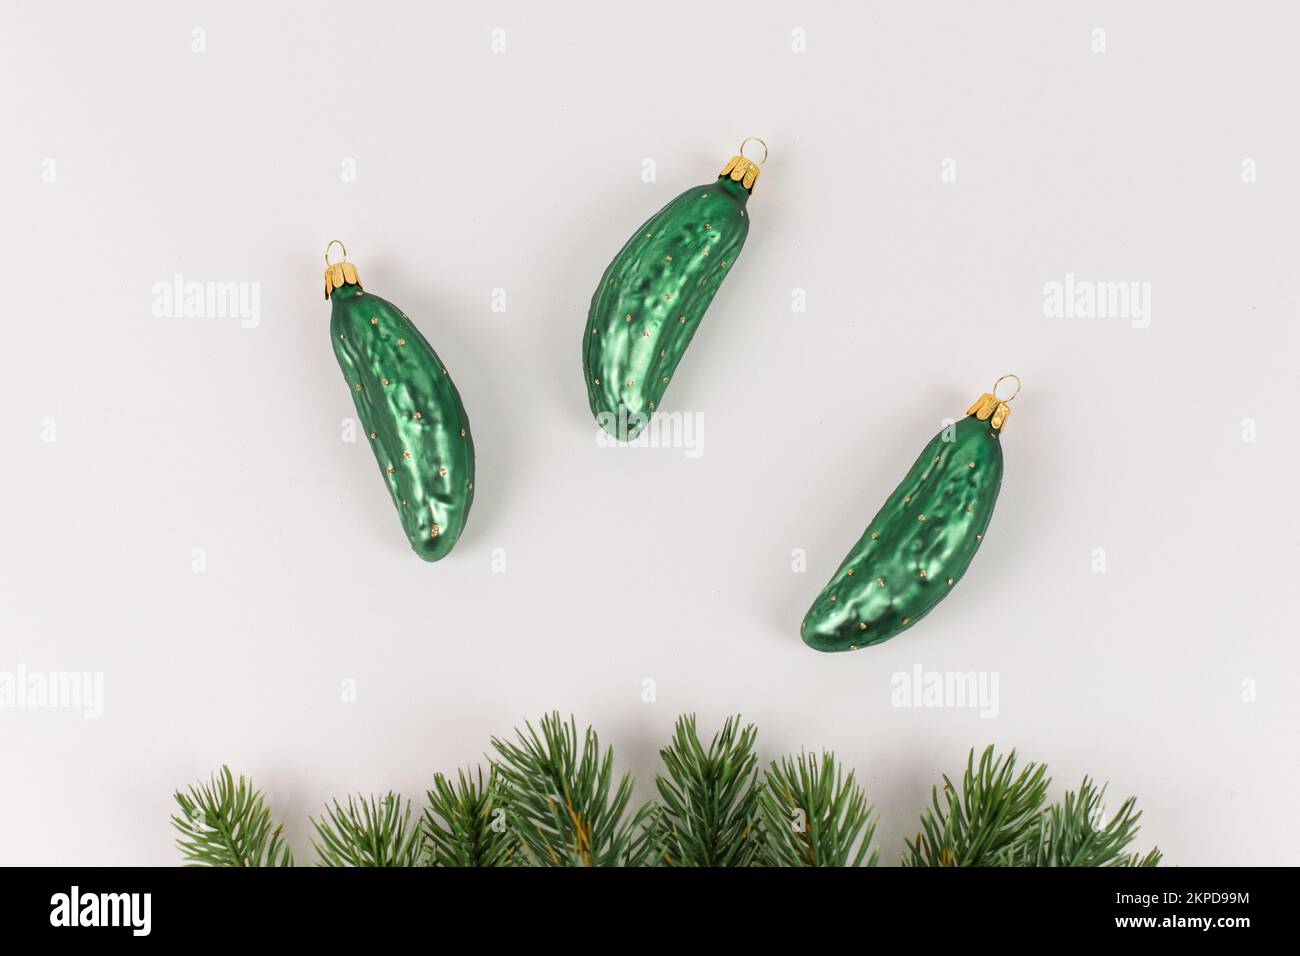 Trois boules d'arbre de Noël en forme de concombre sont couchés sur un fond blanc. Des branches de sapin décorent l'image. Banque D'Images